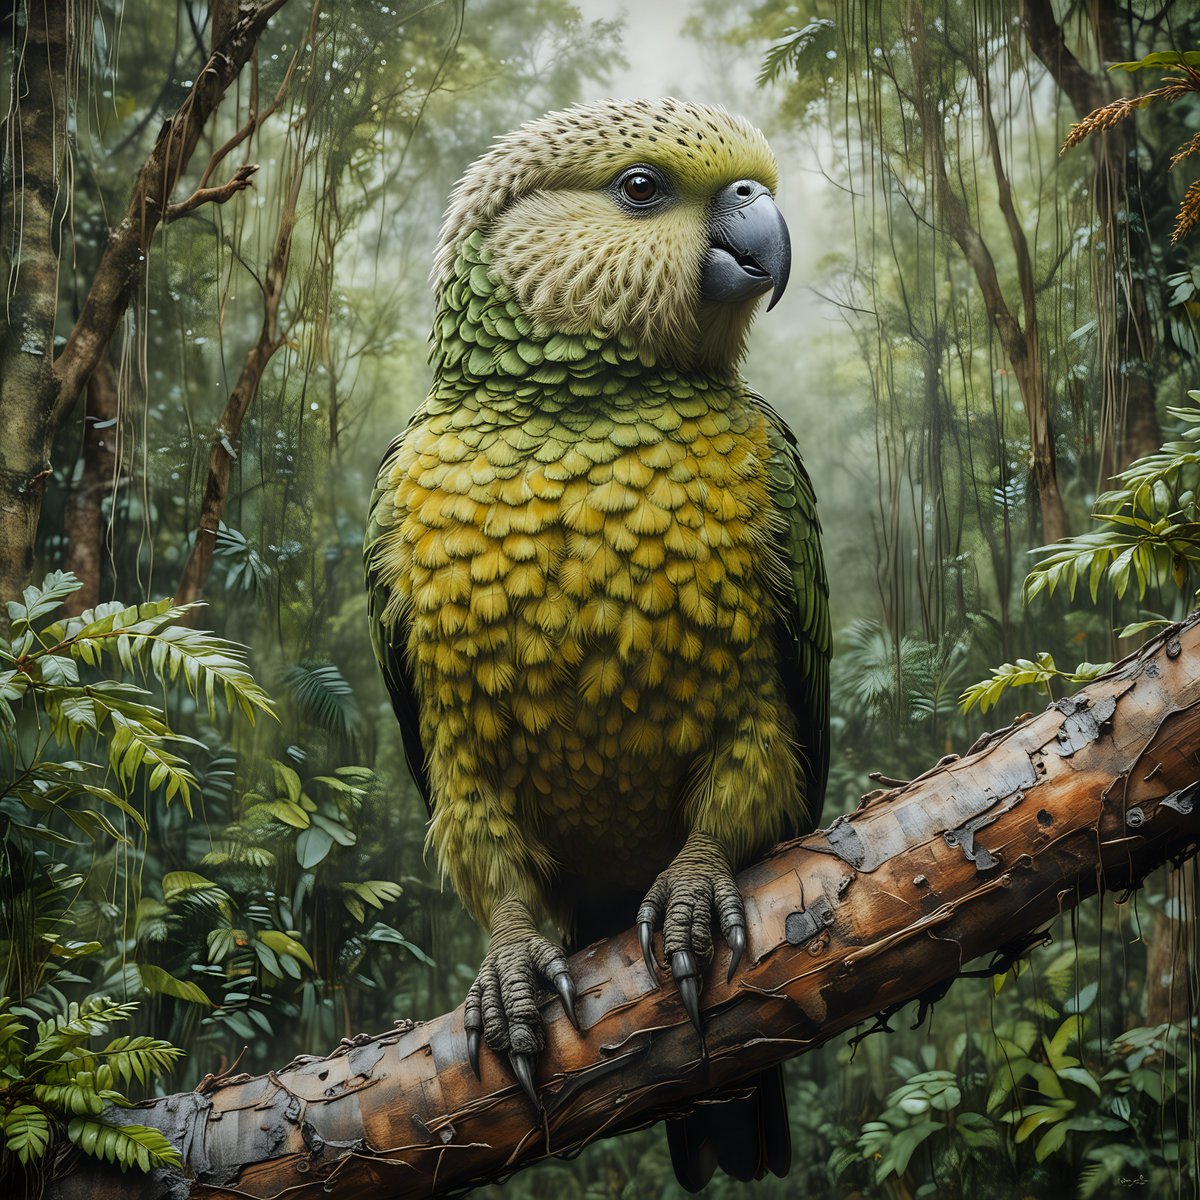 Kakapo Parrot
#art #artist #artwork #drawing #painting #artlover #ArtLovers #wow #Kakapo #Parrot